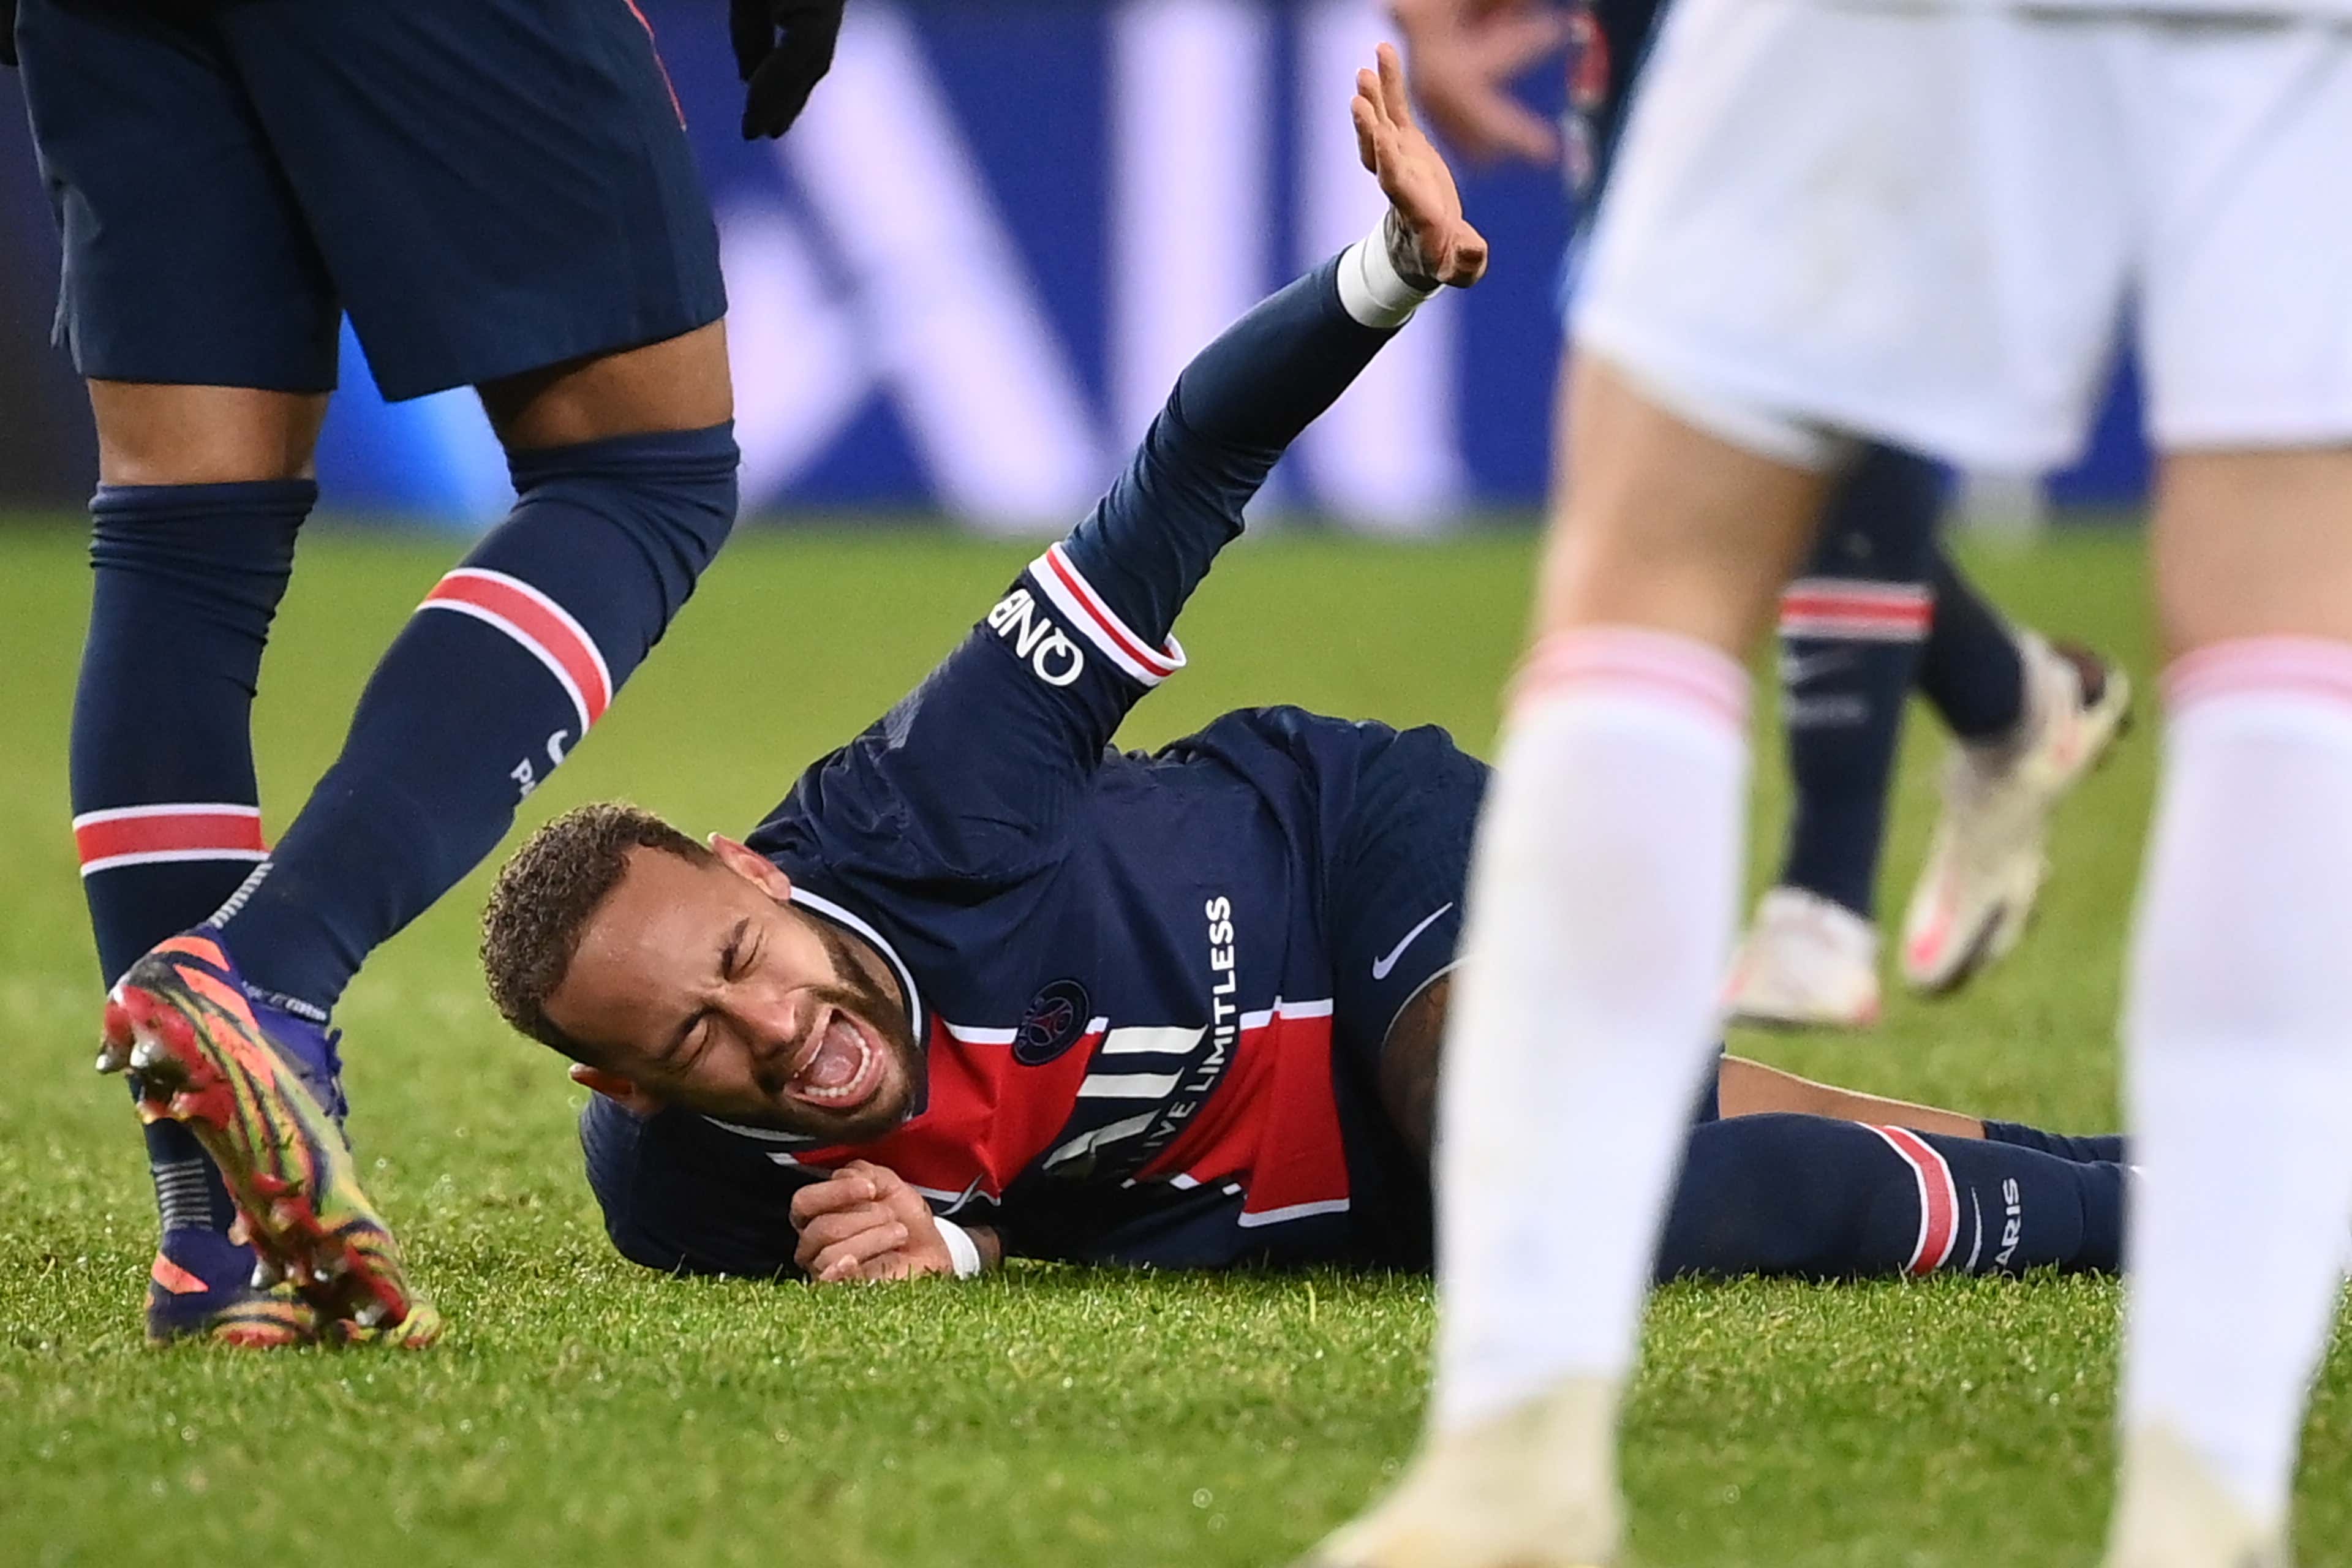 Blessure de Neymar : le PSG donne des nouvelles rassurantes | Goal.com Français